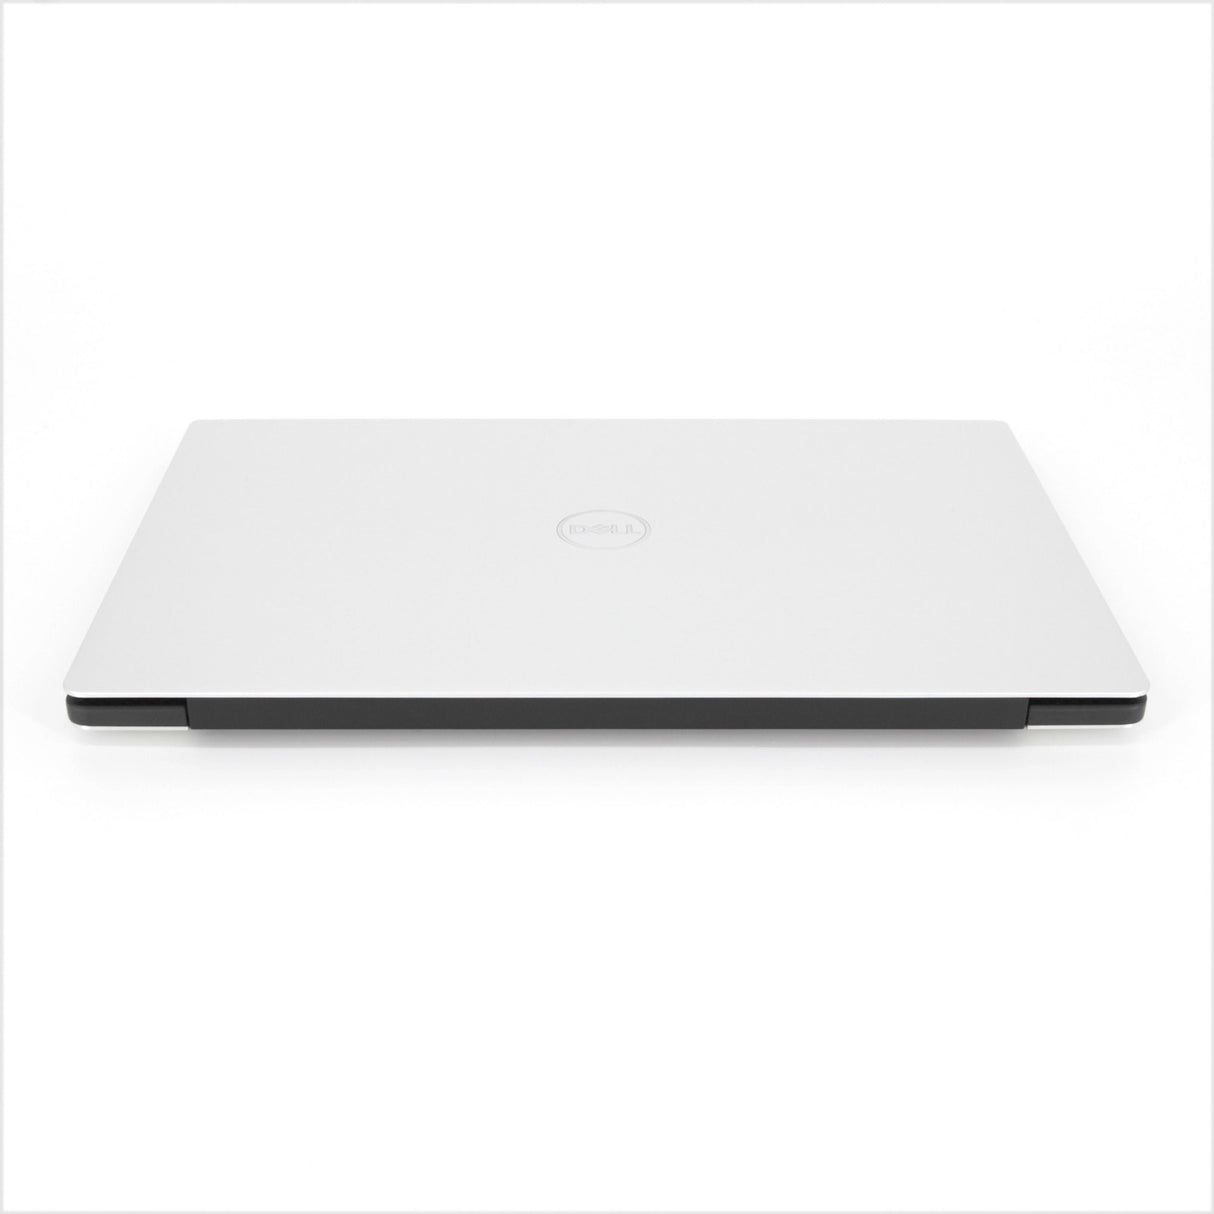 Dell XPS 13 9305 Laptop: 11th Gen Core i7, 16GB RAM, 256GB SSD, Silver, Warranty - GreenGreen Store